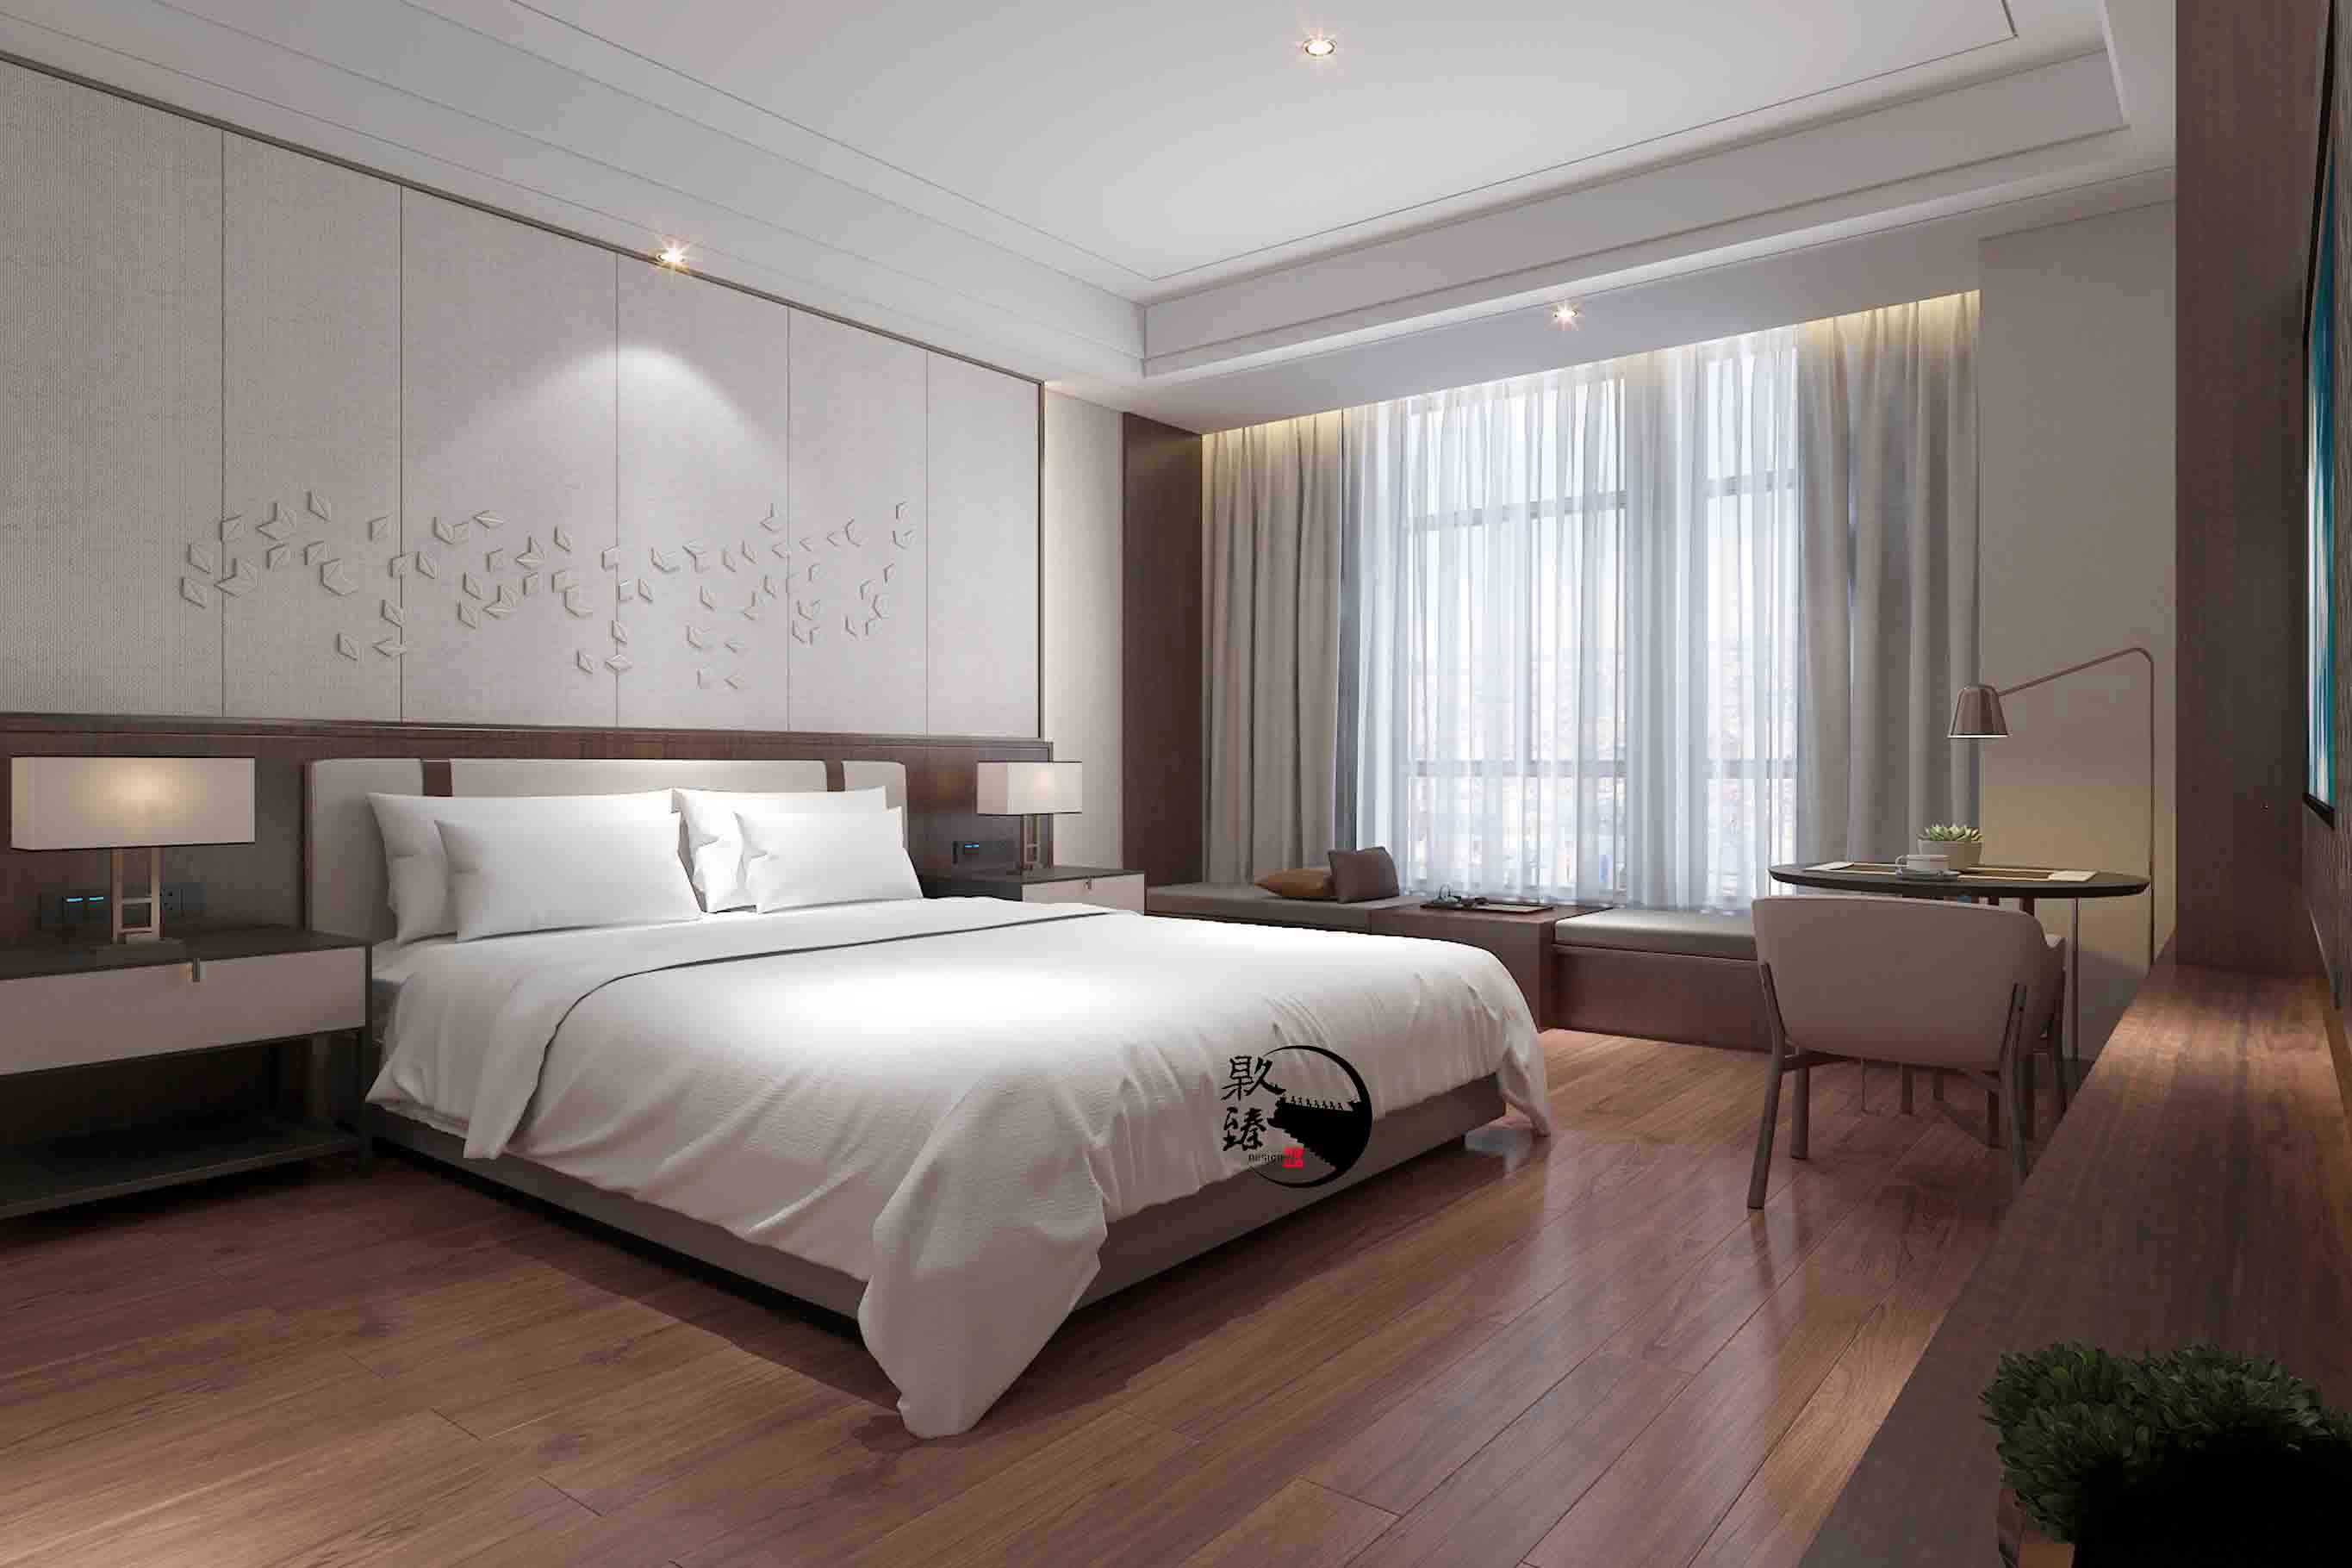 西吉米素酒店设计|满足客户对舒适和安静的需求